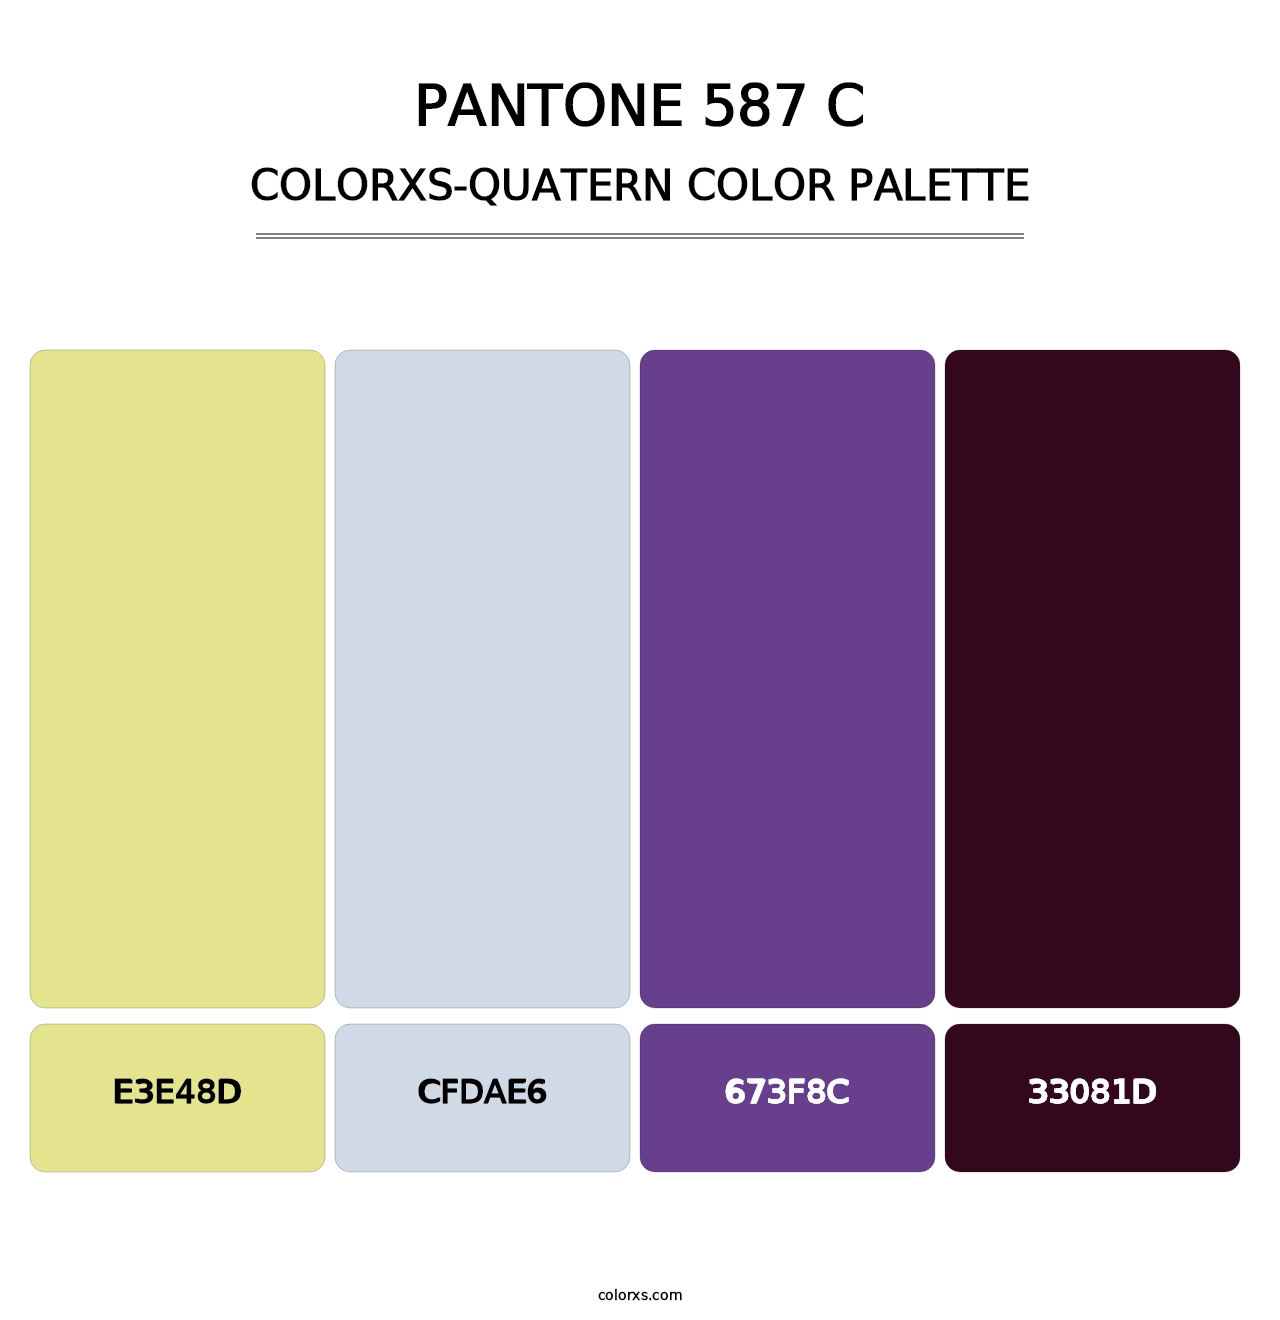 PANTONE 587 C - Colorxs Quatern Palette